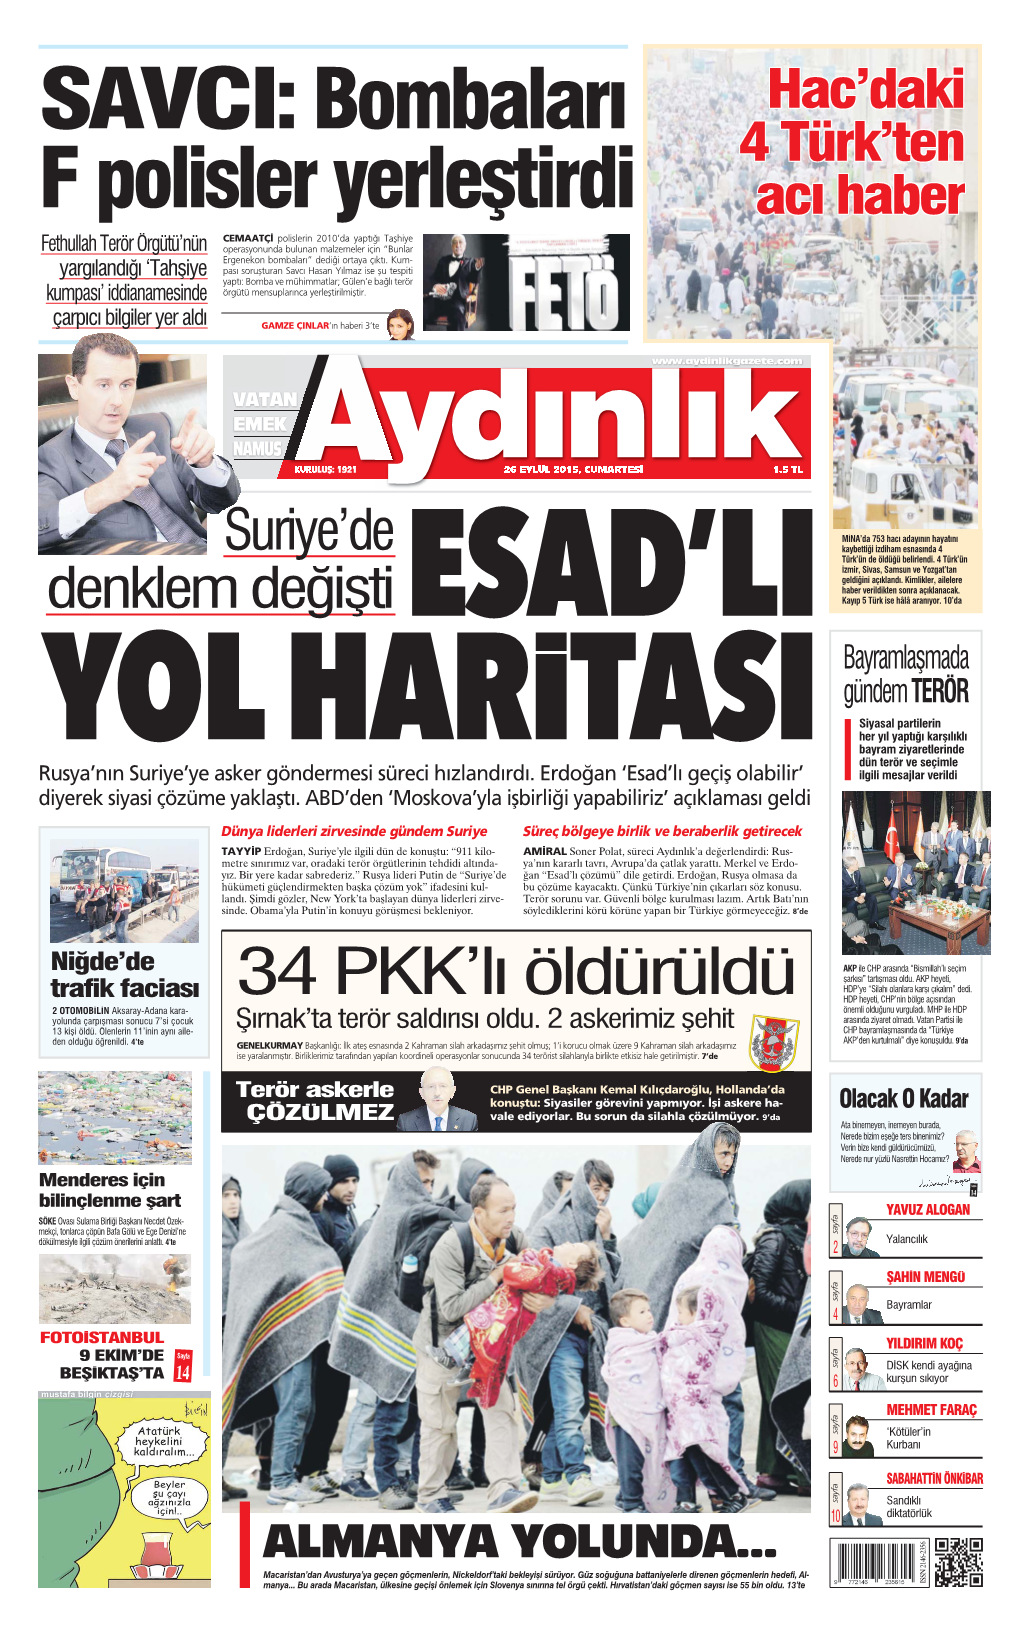 34 PKK'lı Öldürüldü